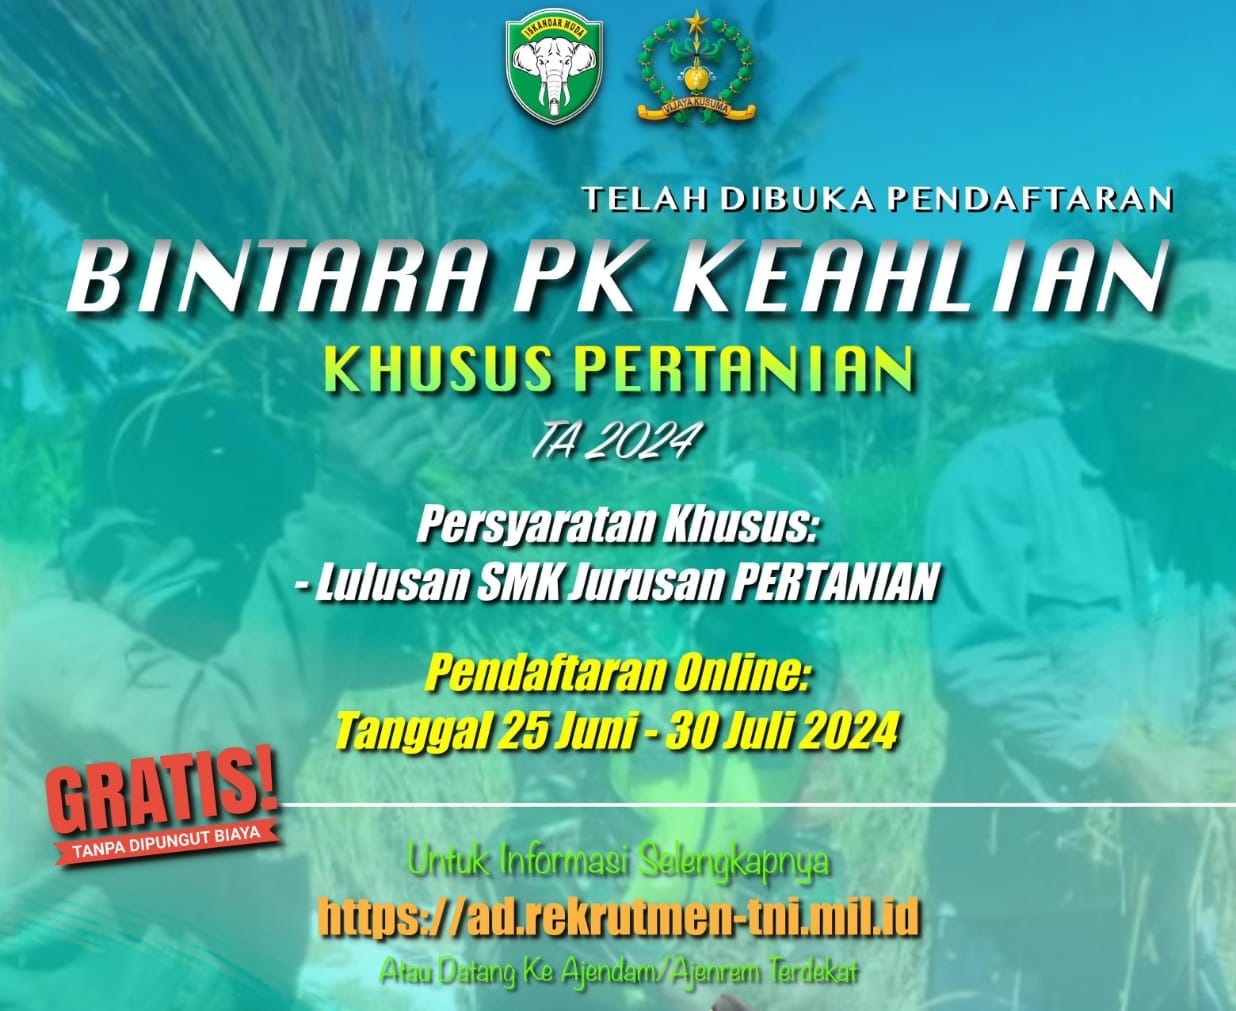 TNI AD Buka Seleksi Bintara PK Keahlian Khusus Untuk Lulusan SMK Jurusan Pertanian 